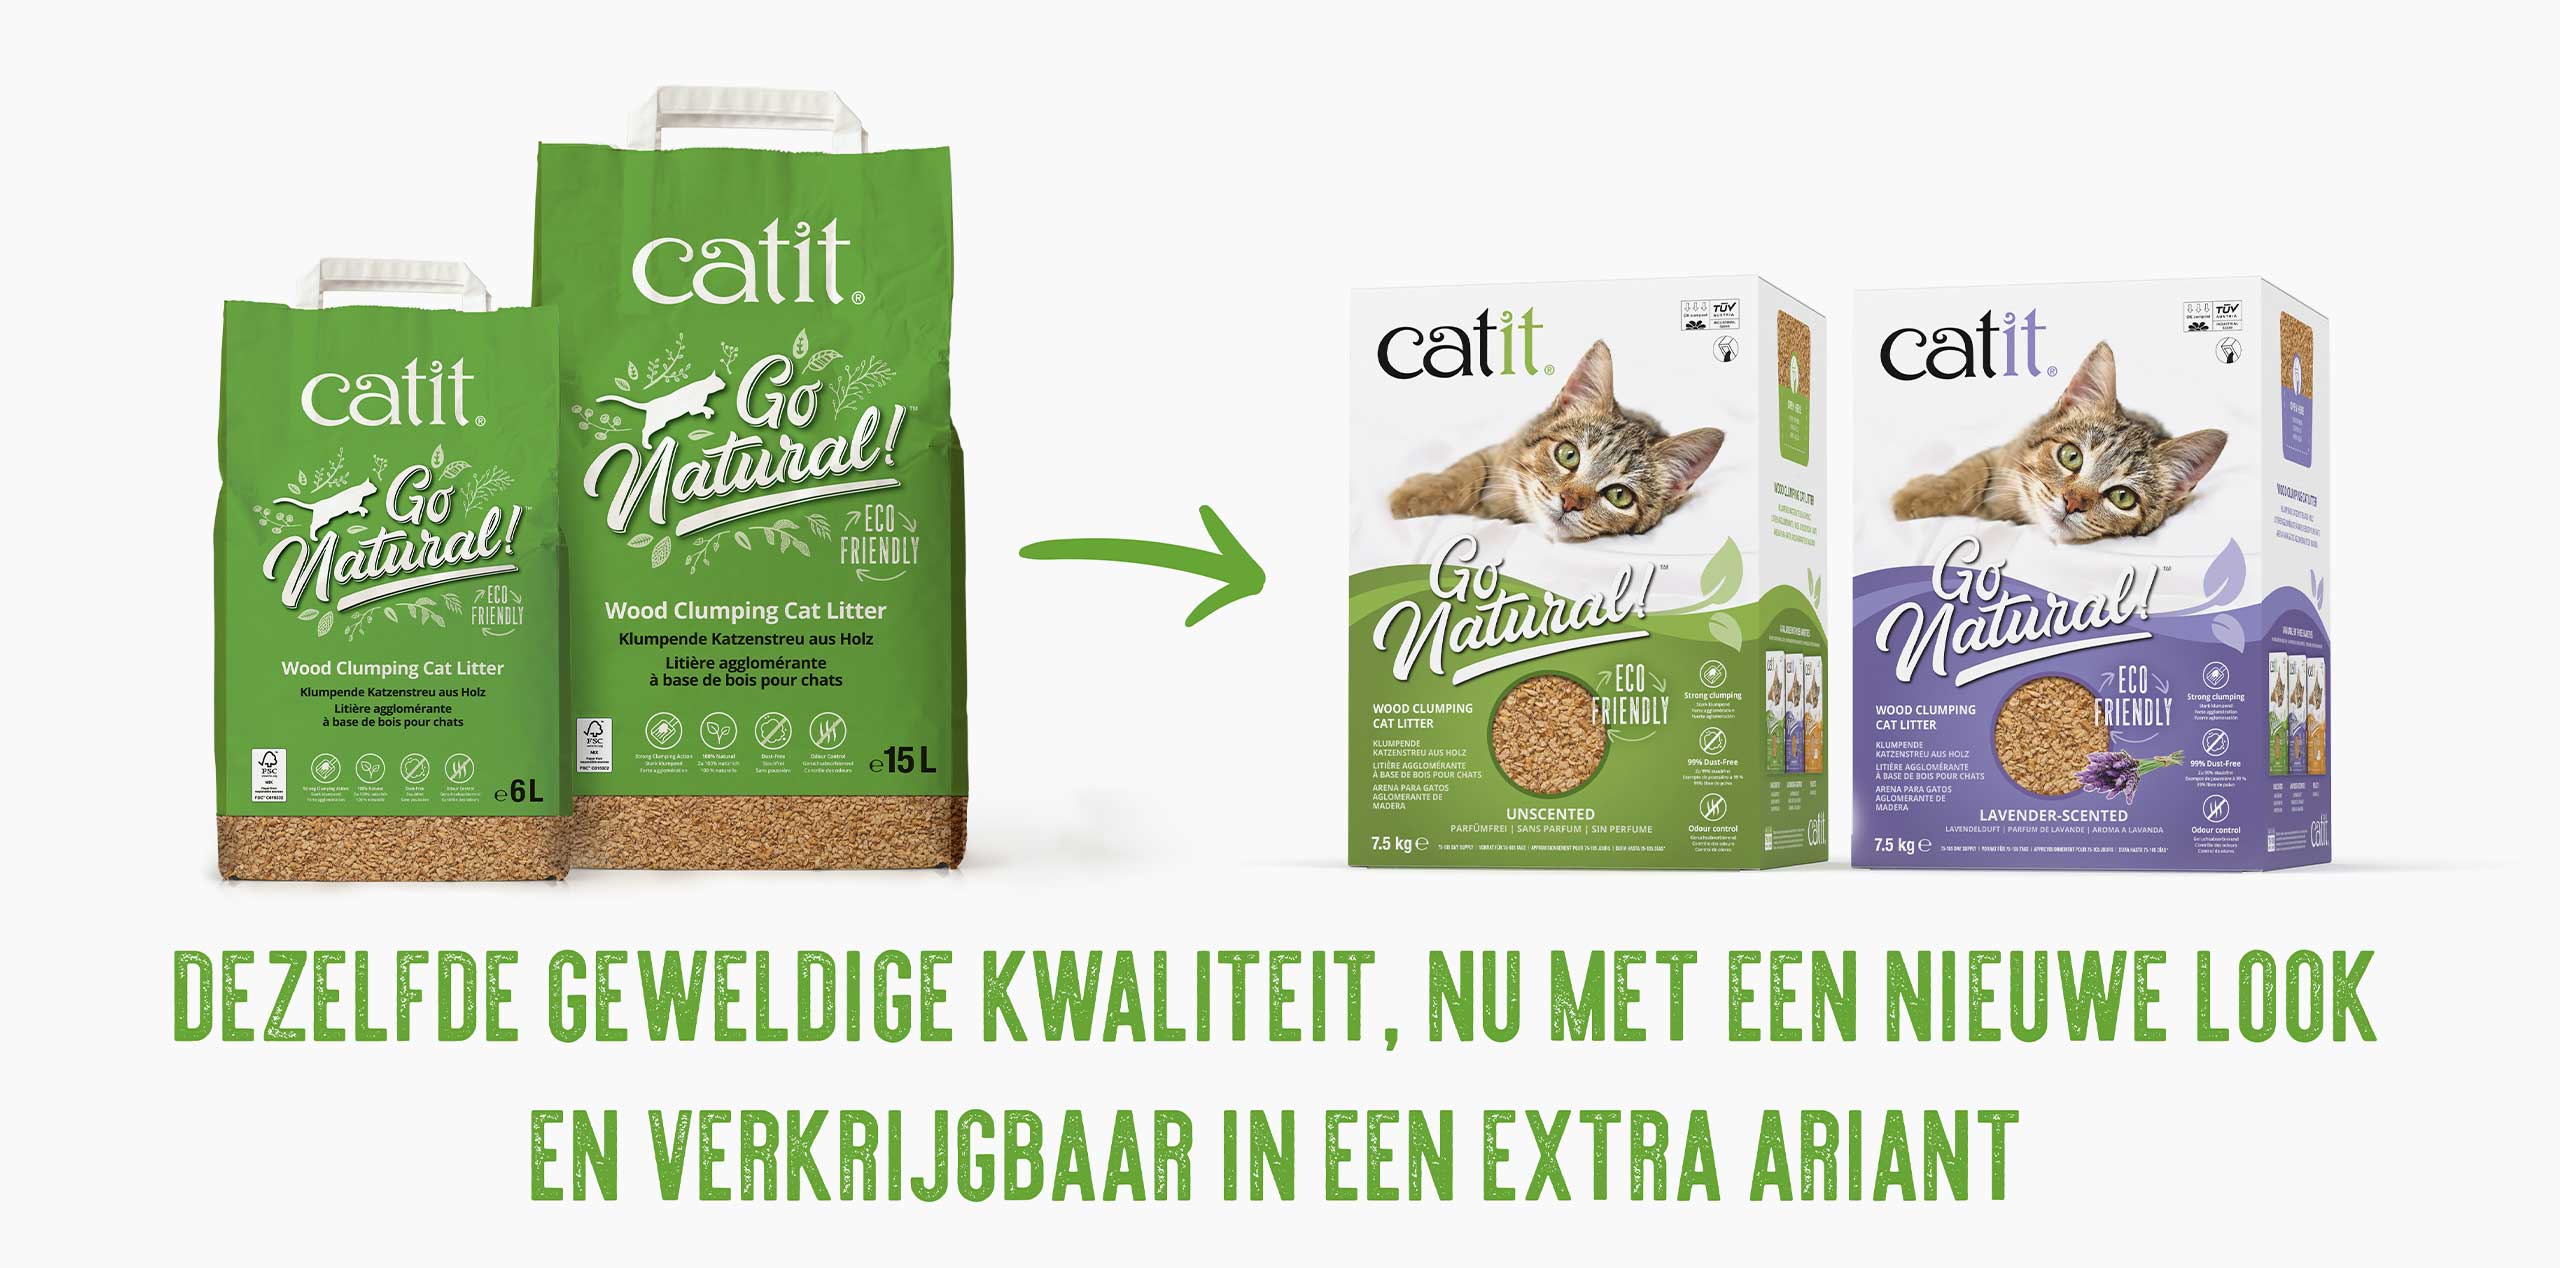 De nieuwe verpakking en de nieuwe variant van de Catit Go Natural kattenbakvulling op houtbasis